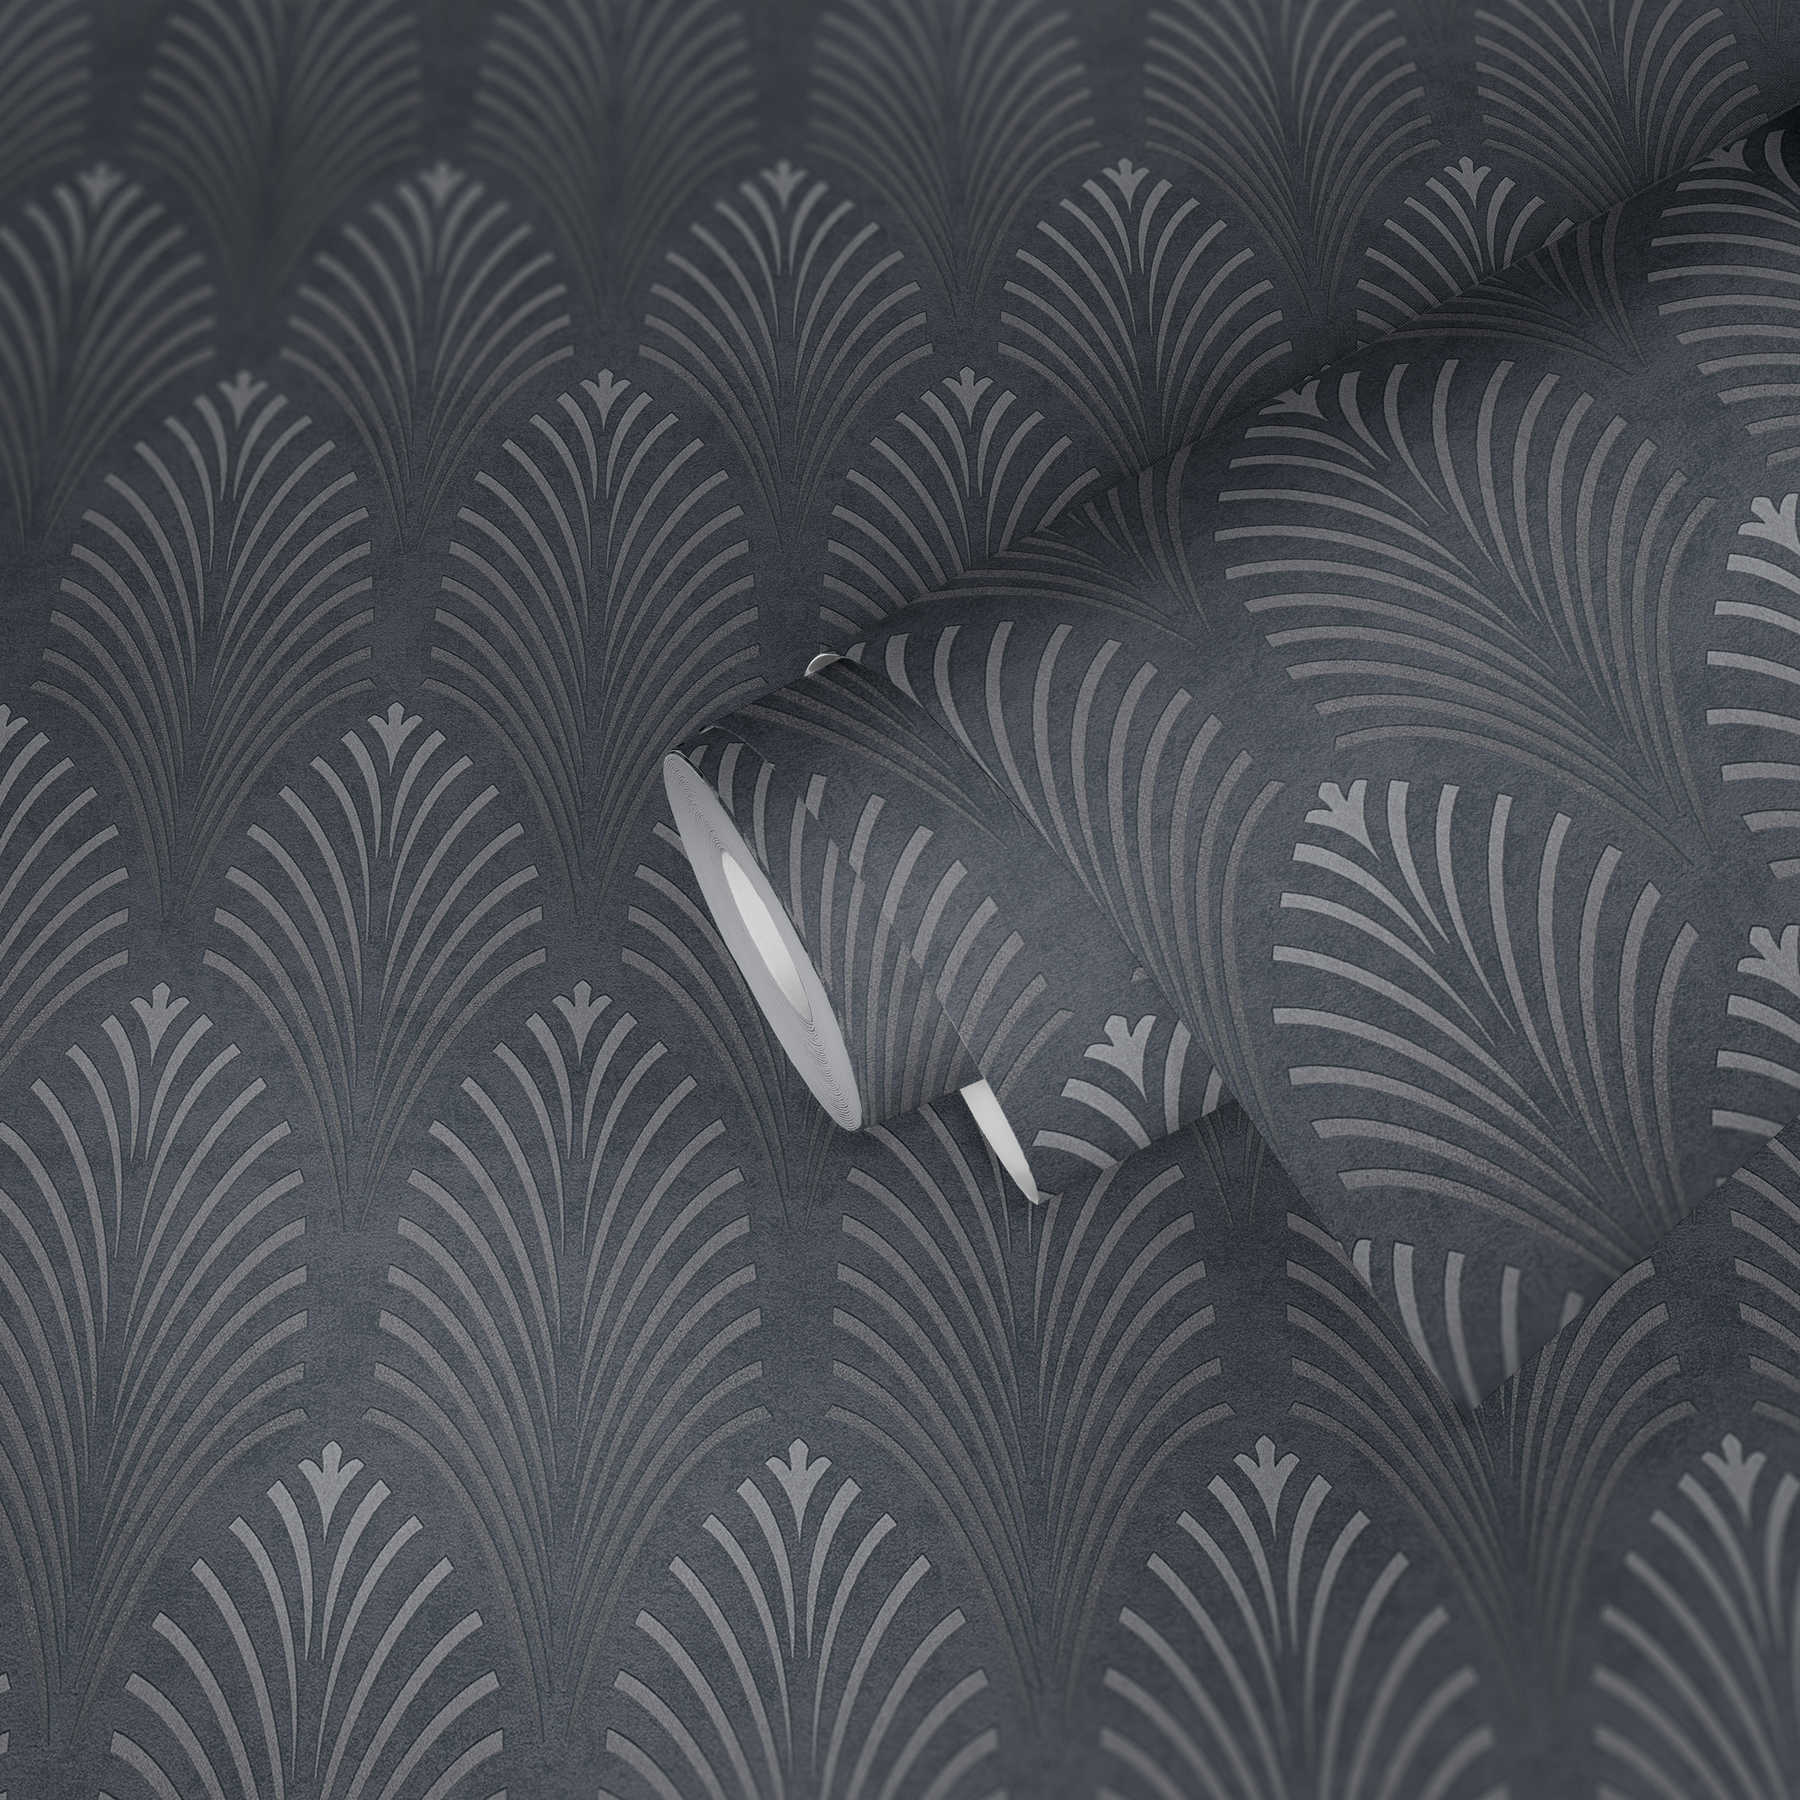             Retro behang Art Deco stijl met geometrisch patroon - zwart, zilver, grijs
        